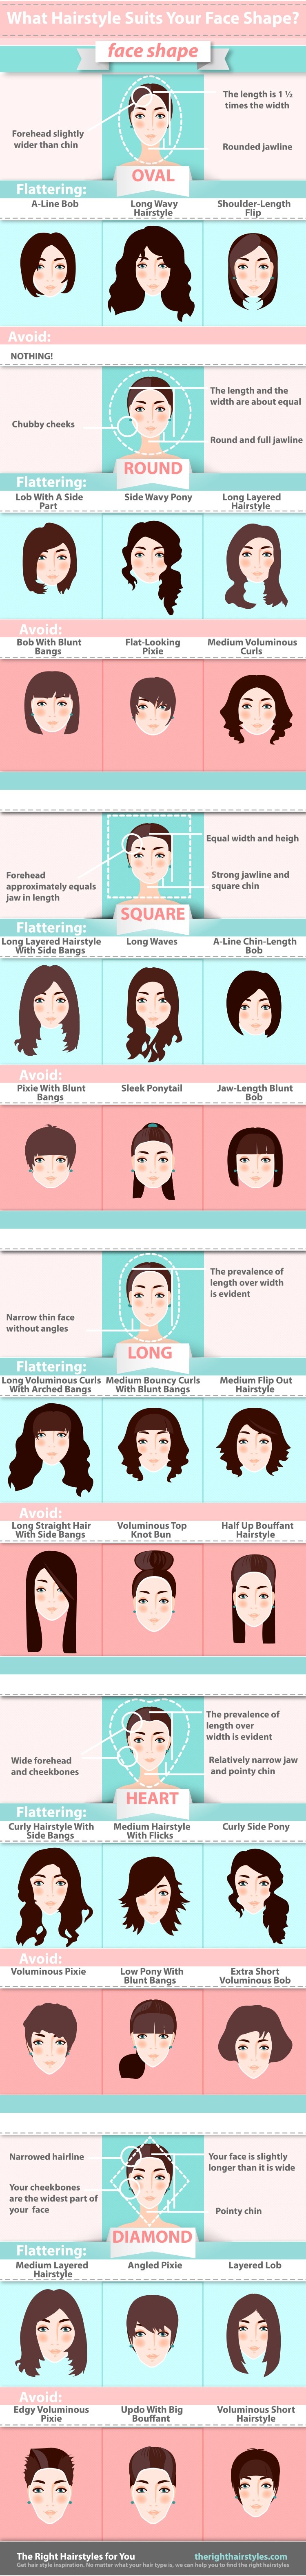 Welche Frisur passt Ihnen nach Ihrer Gesichtsform?  